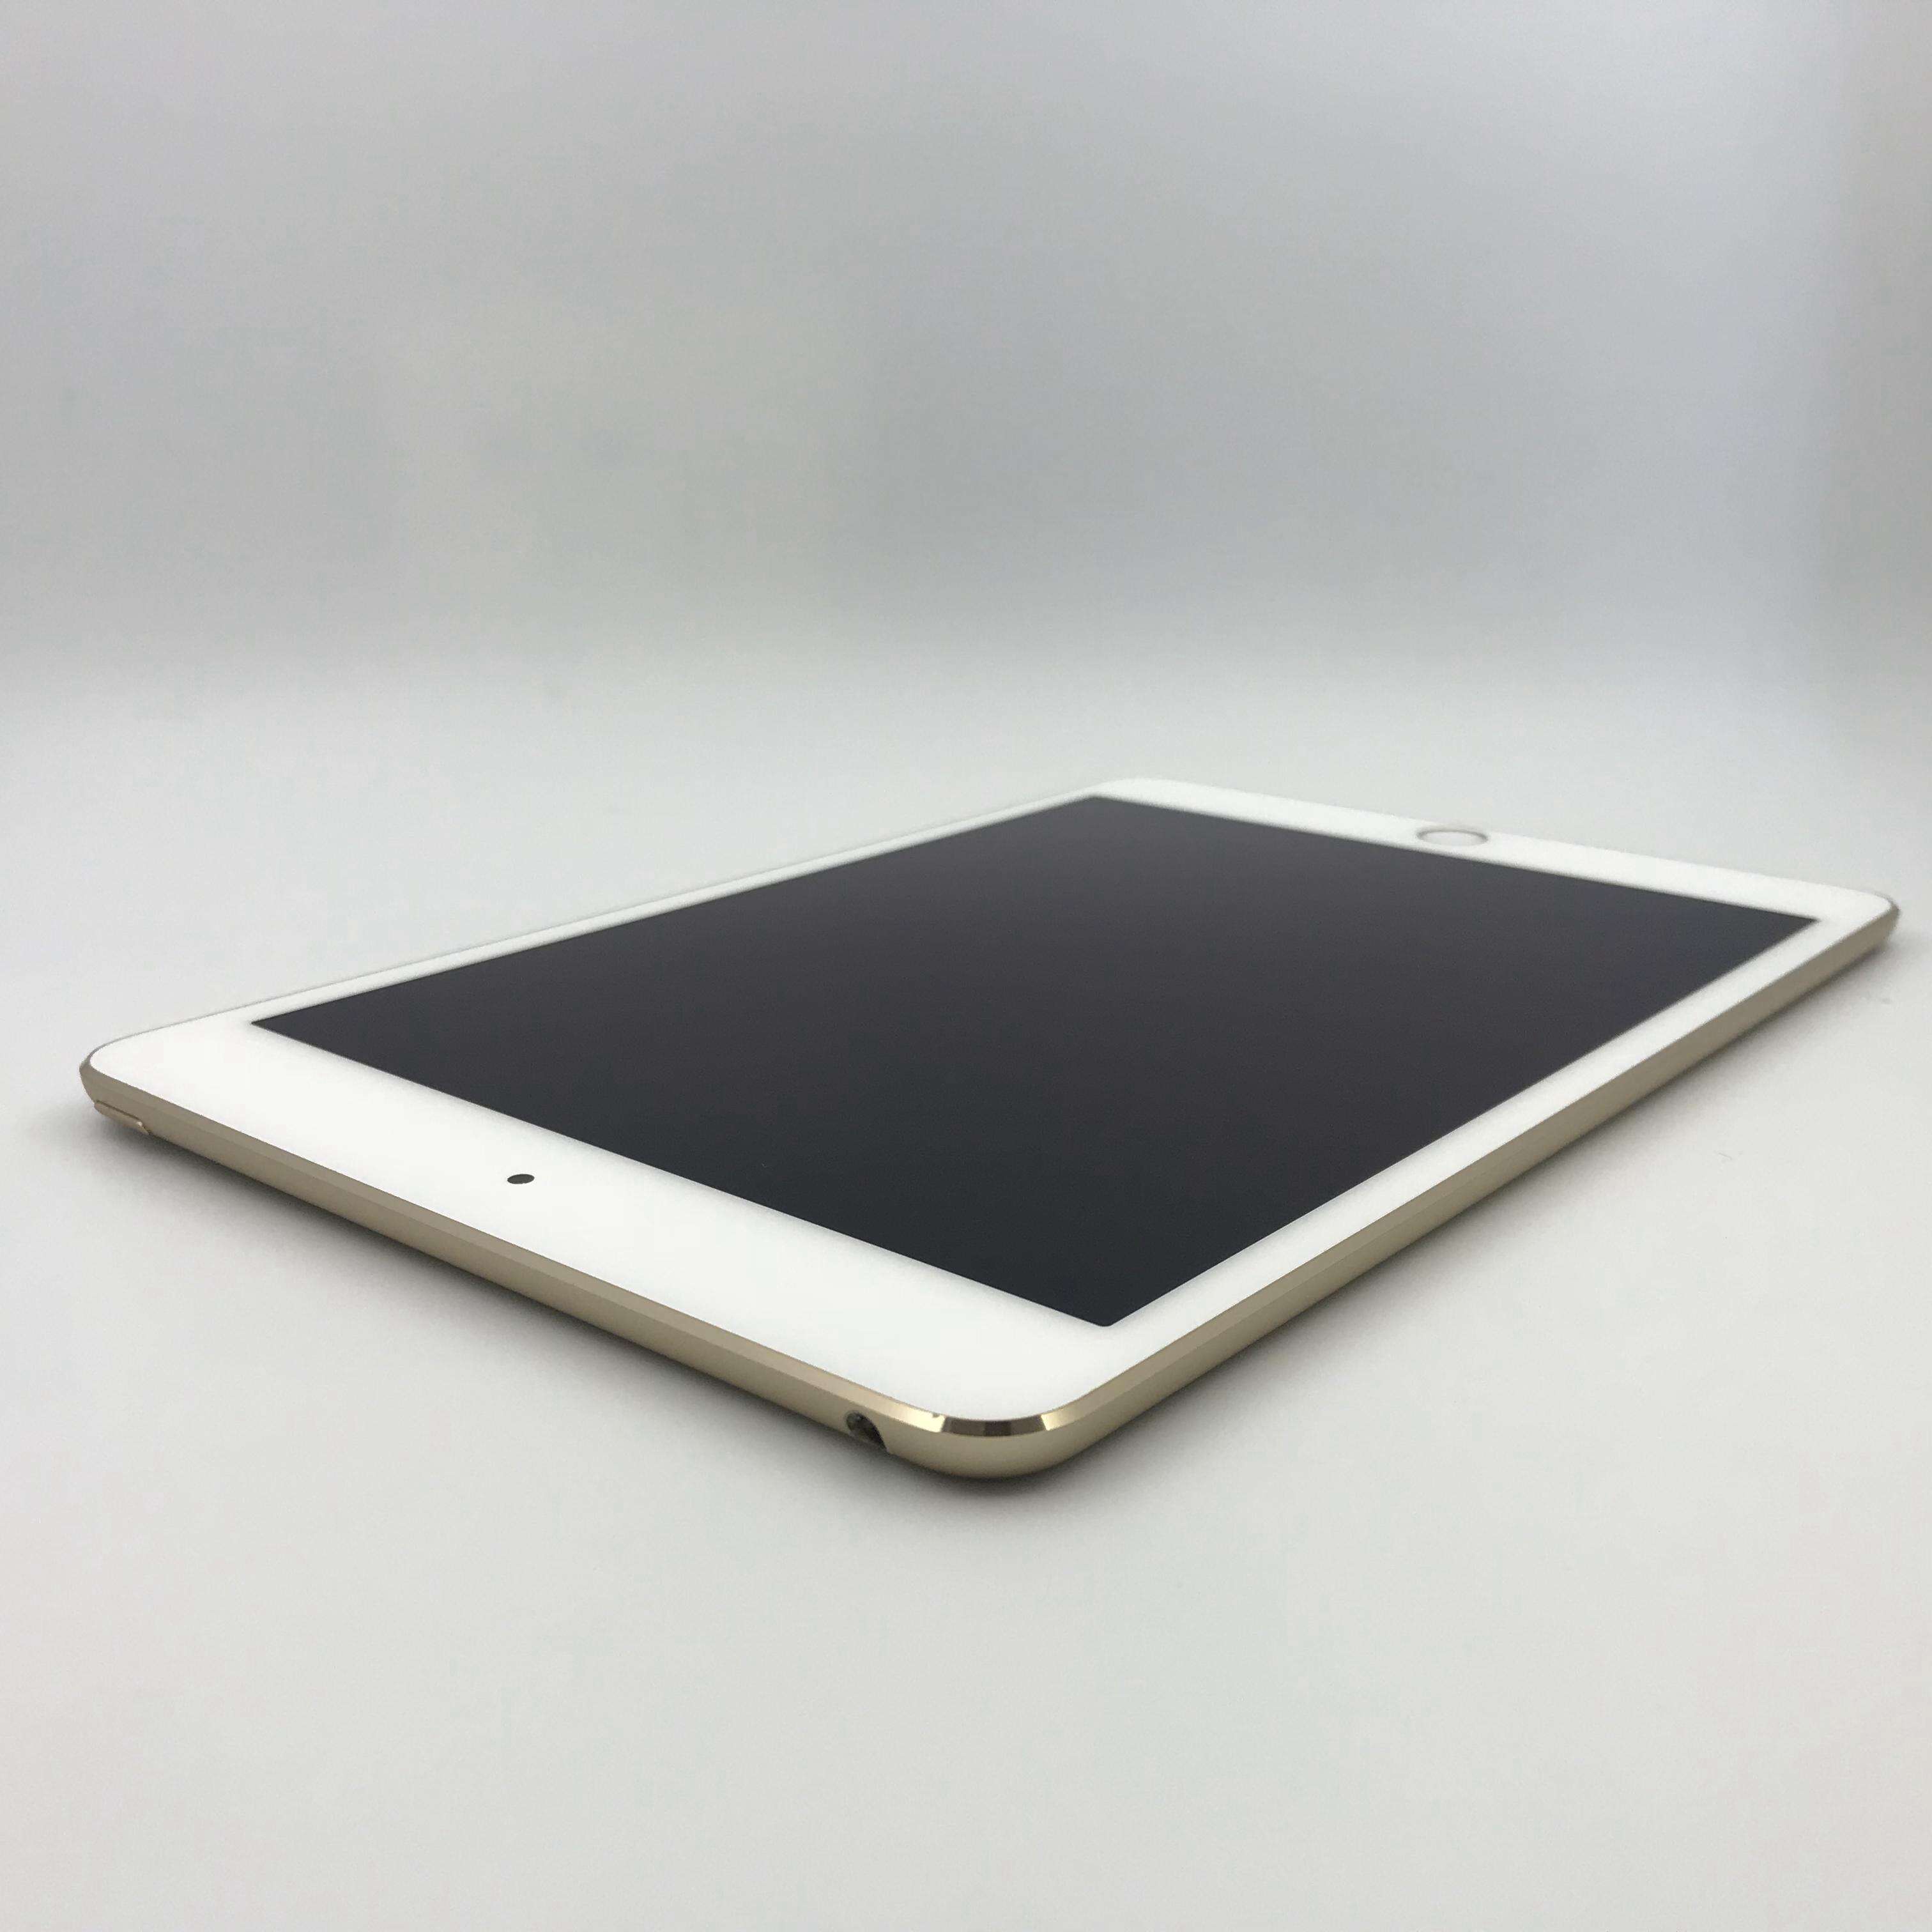 iPad mini 4 64G 国行WIFI版 - 二手iPad mini 4 - 爱否商城(www.aifou.cn)